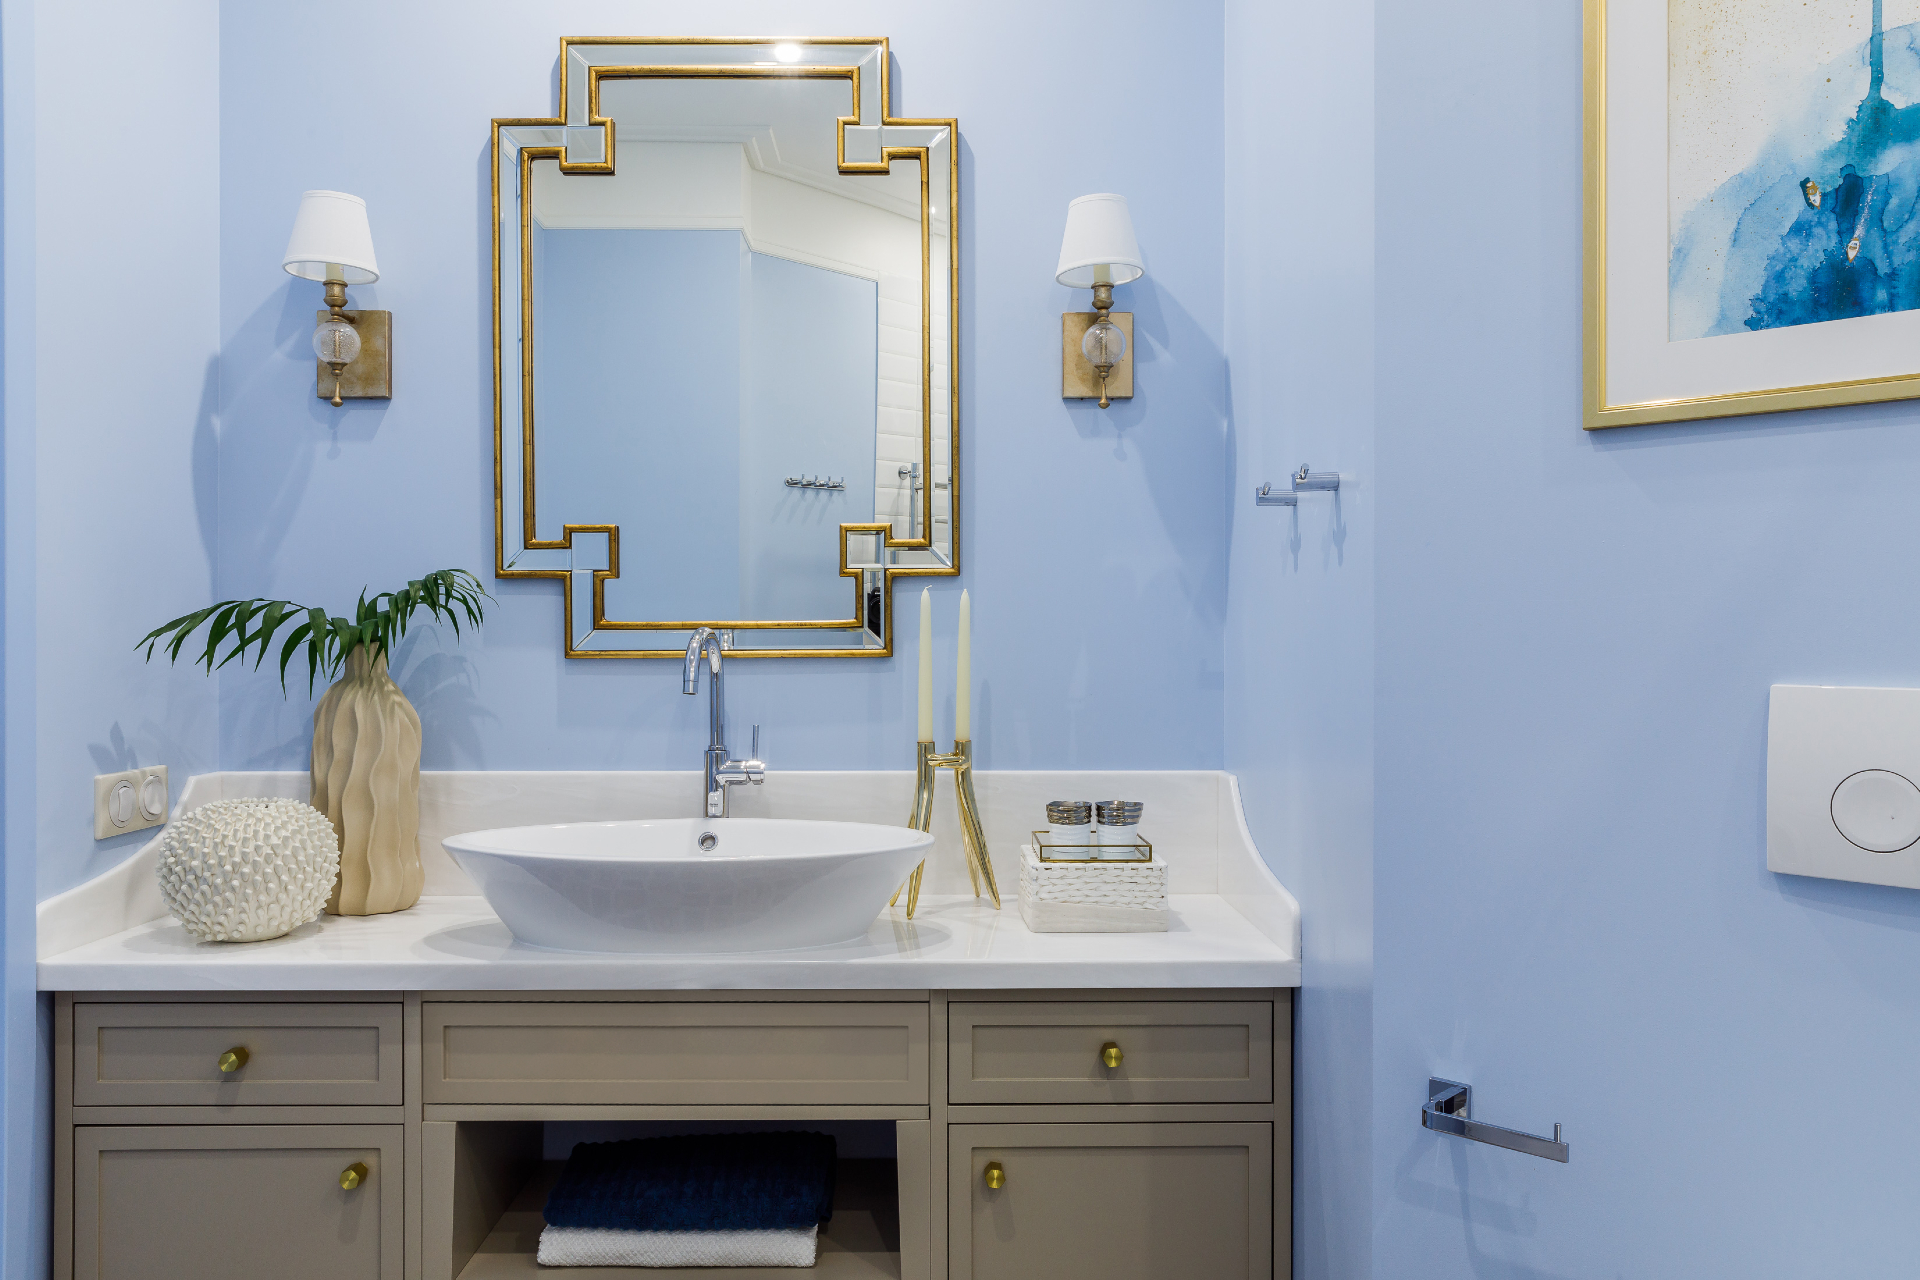 В небольших ванных комнатах фацеты на зеркале дадут больше света и пространства. Еще одно решение — чередовать зеркальную плитку с фацетом с керамической